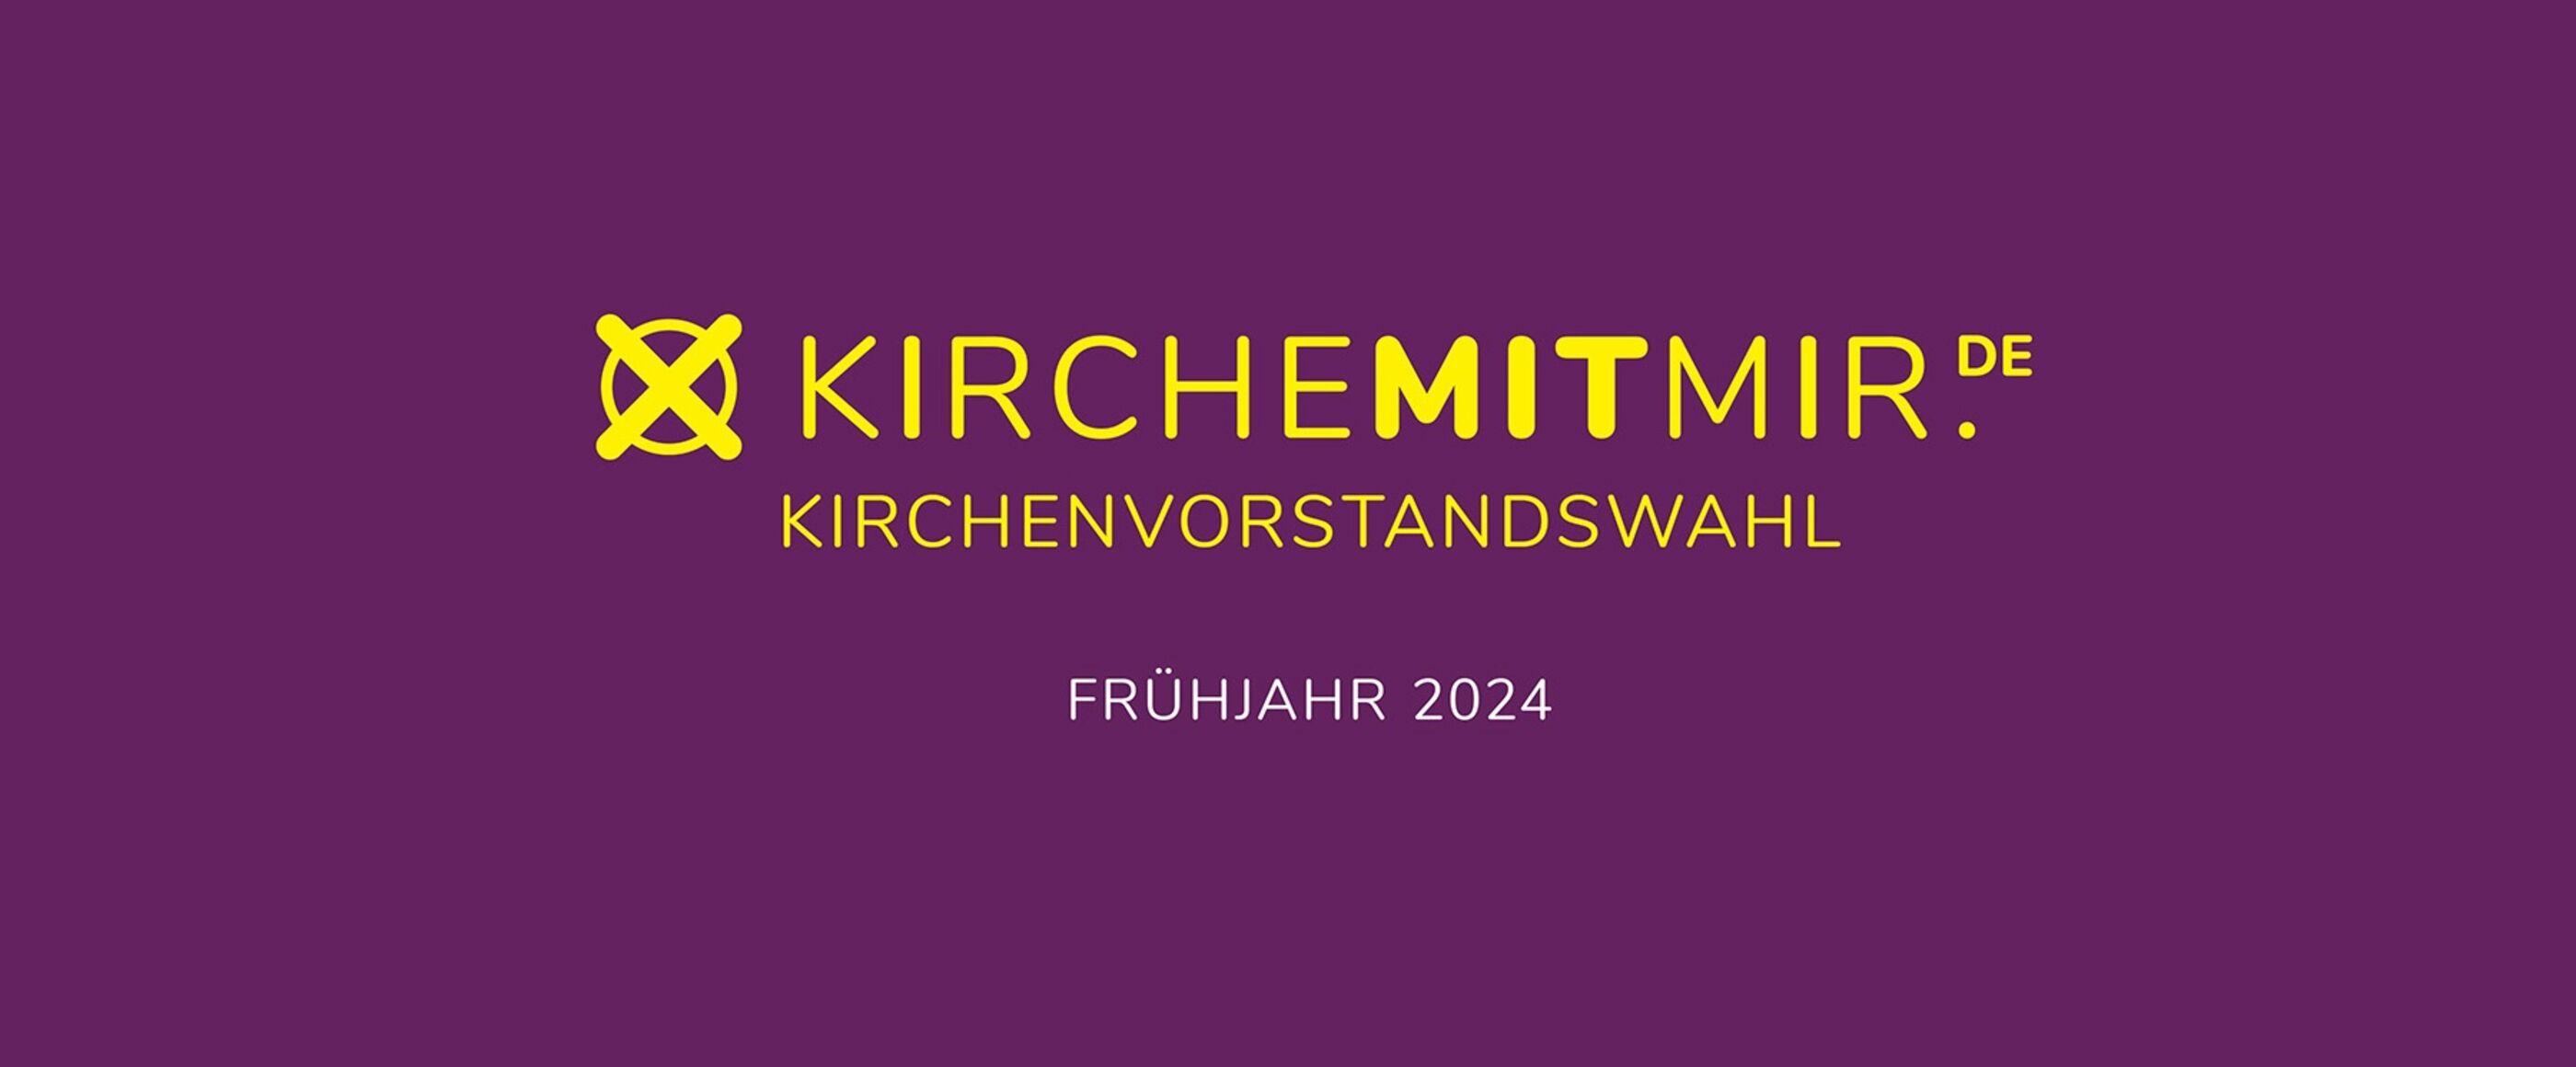 Auf rot-lila Untergrund steht in gelb: Kirche mit mir - Kirchenvorstandswahl - Frühjahr 2024